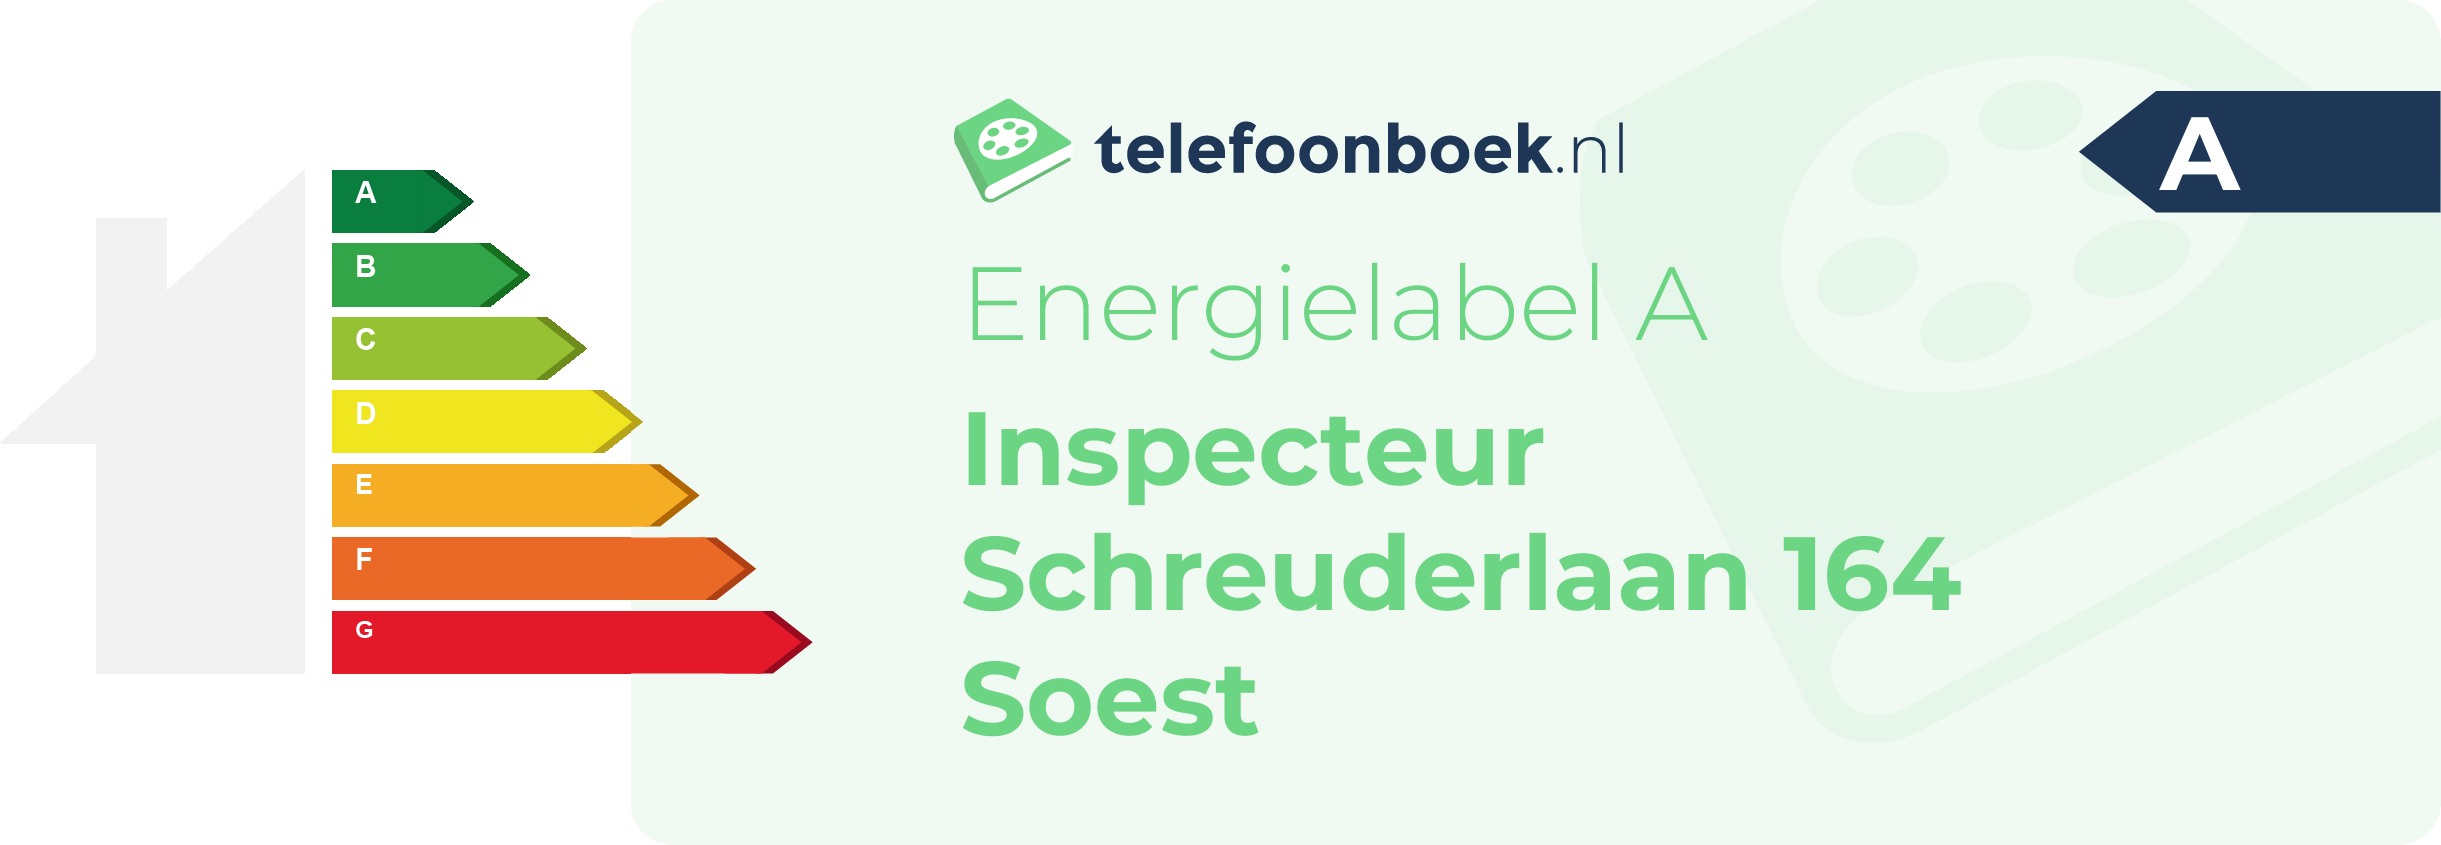 Energielabel Inspecteur Schreuderlaan 164 Soest